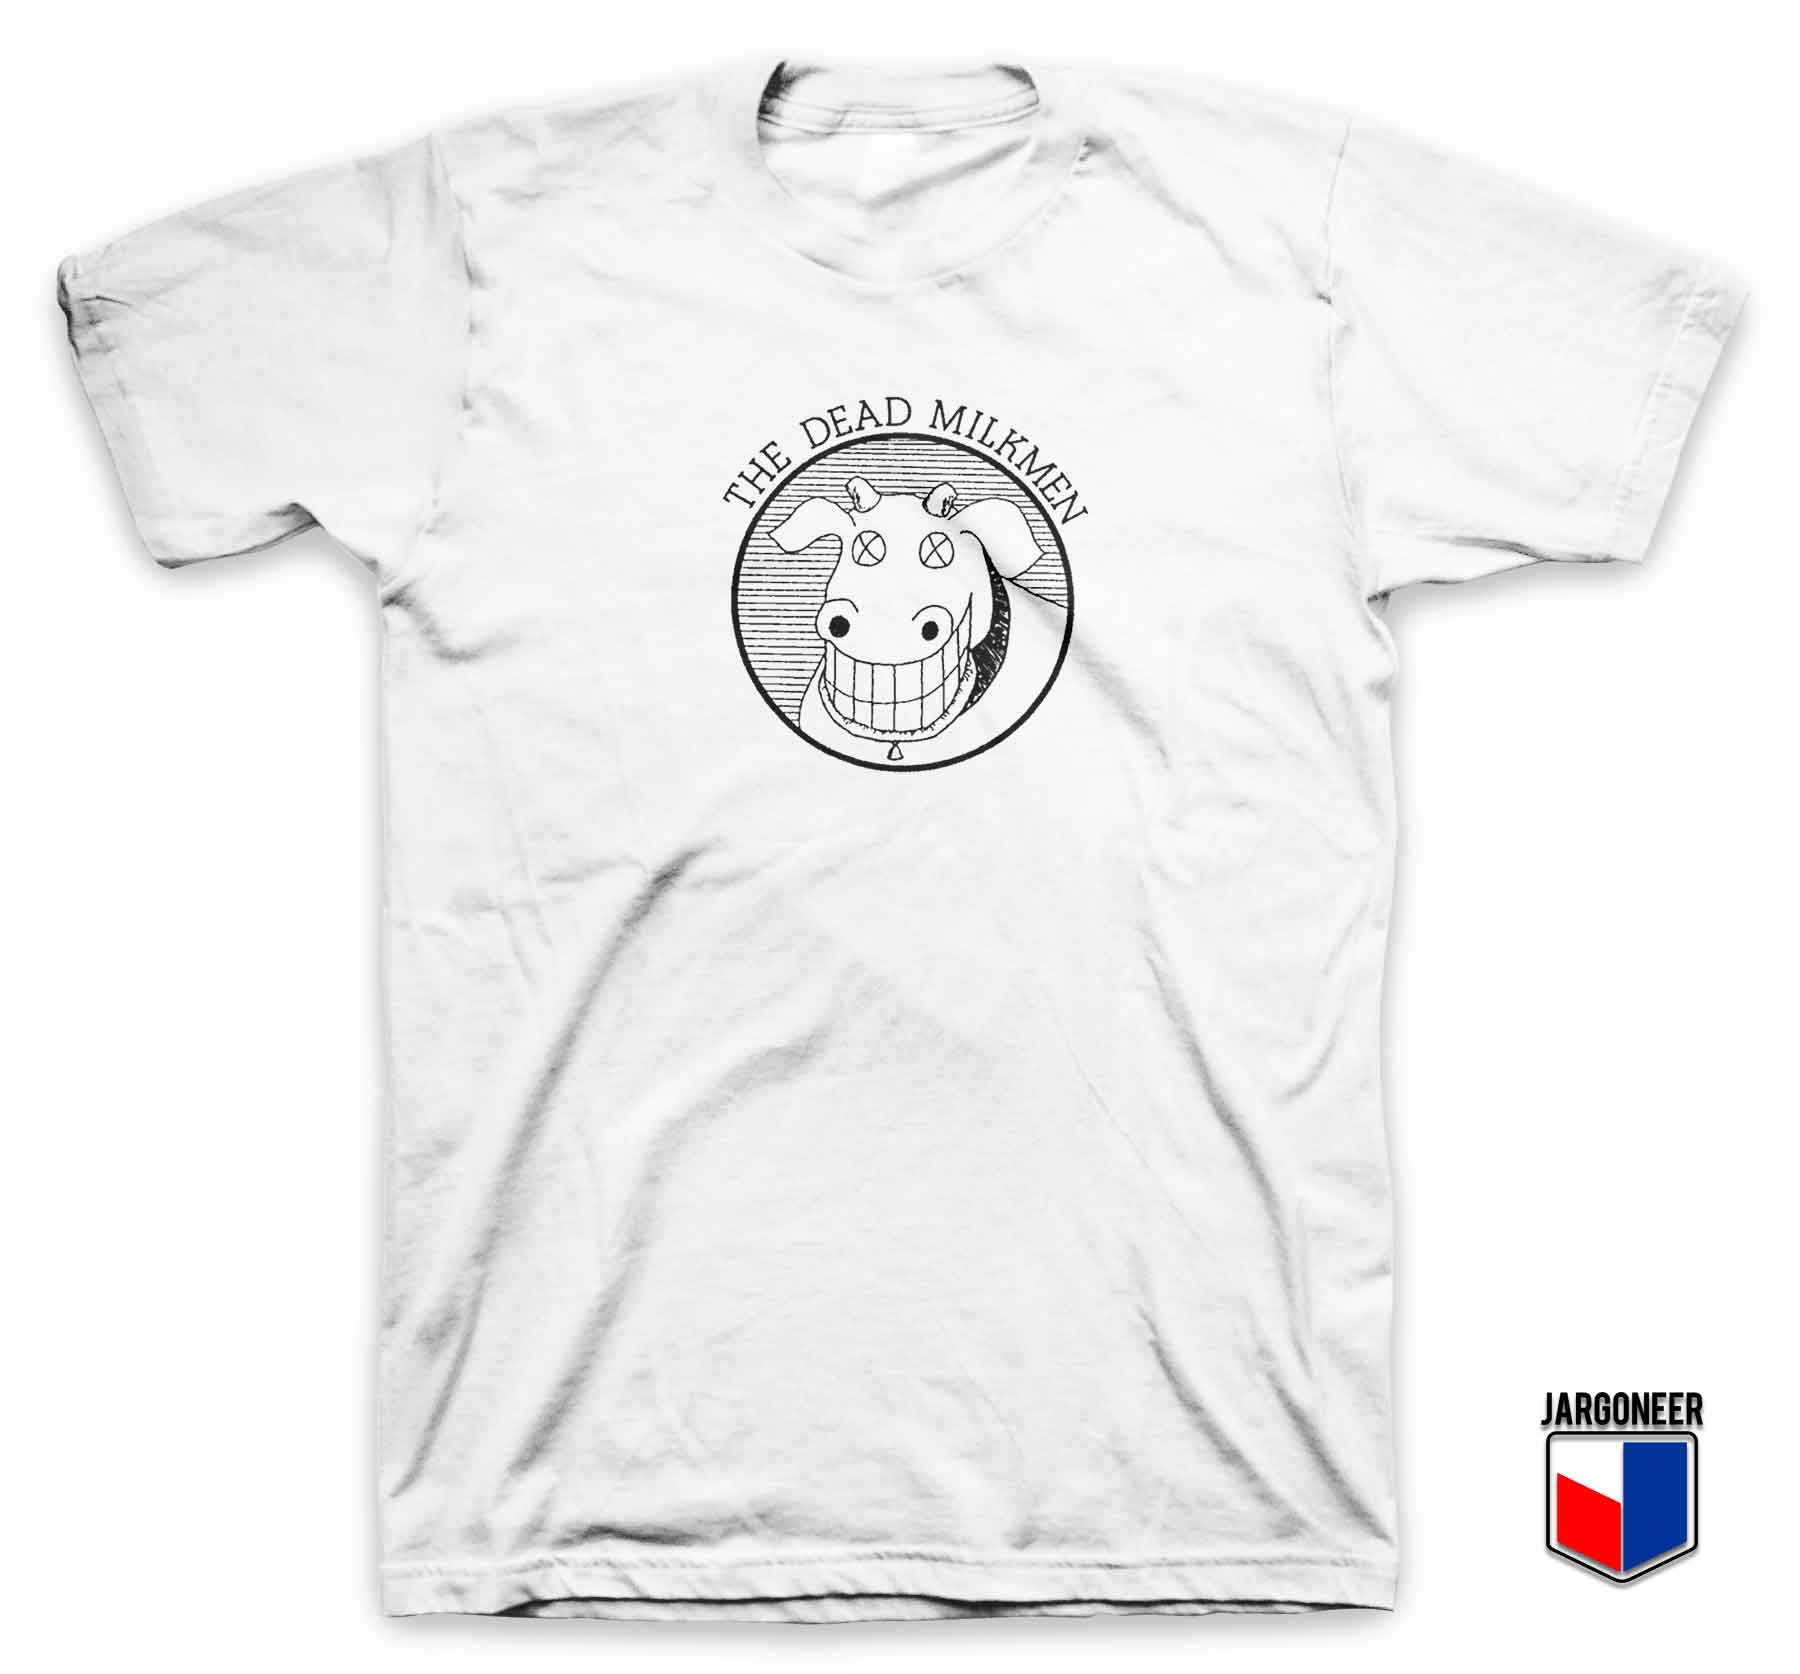 The Dead Milkmen 3 - Shop Unique Graphic Cool Shirt Designs